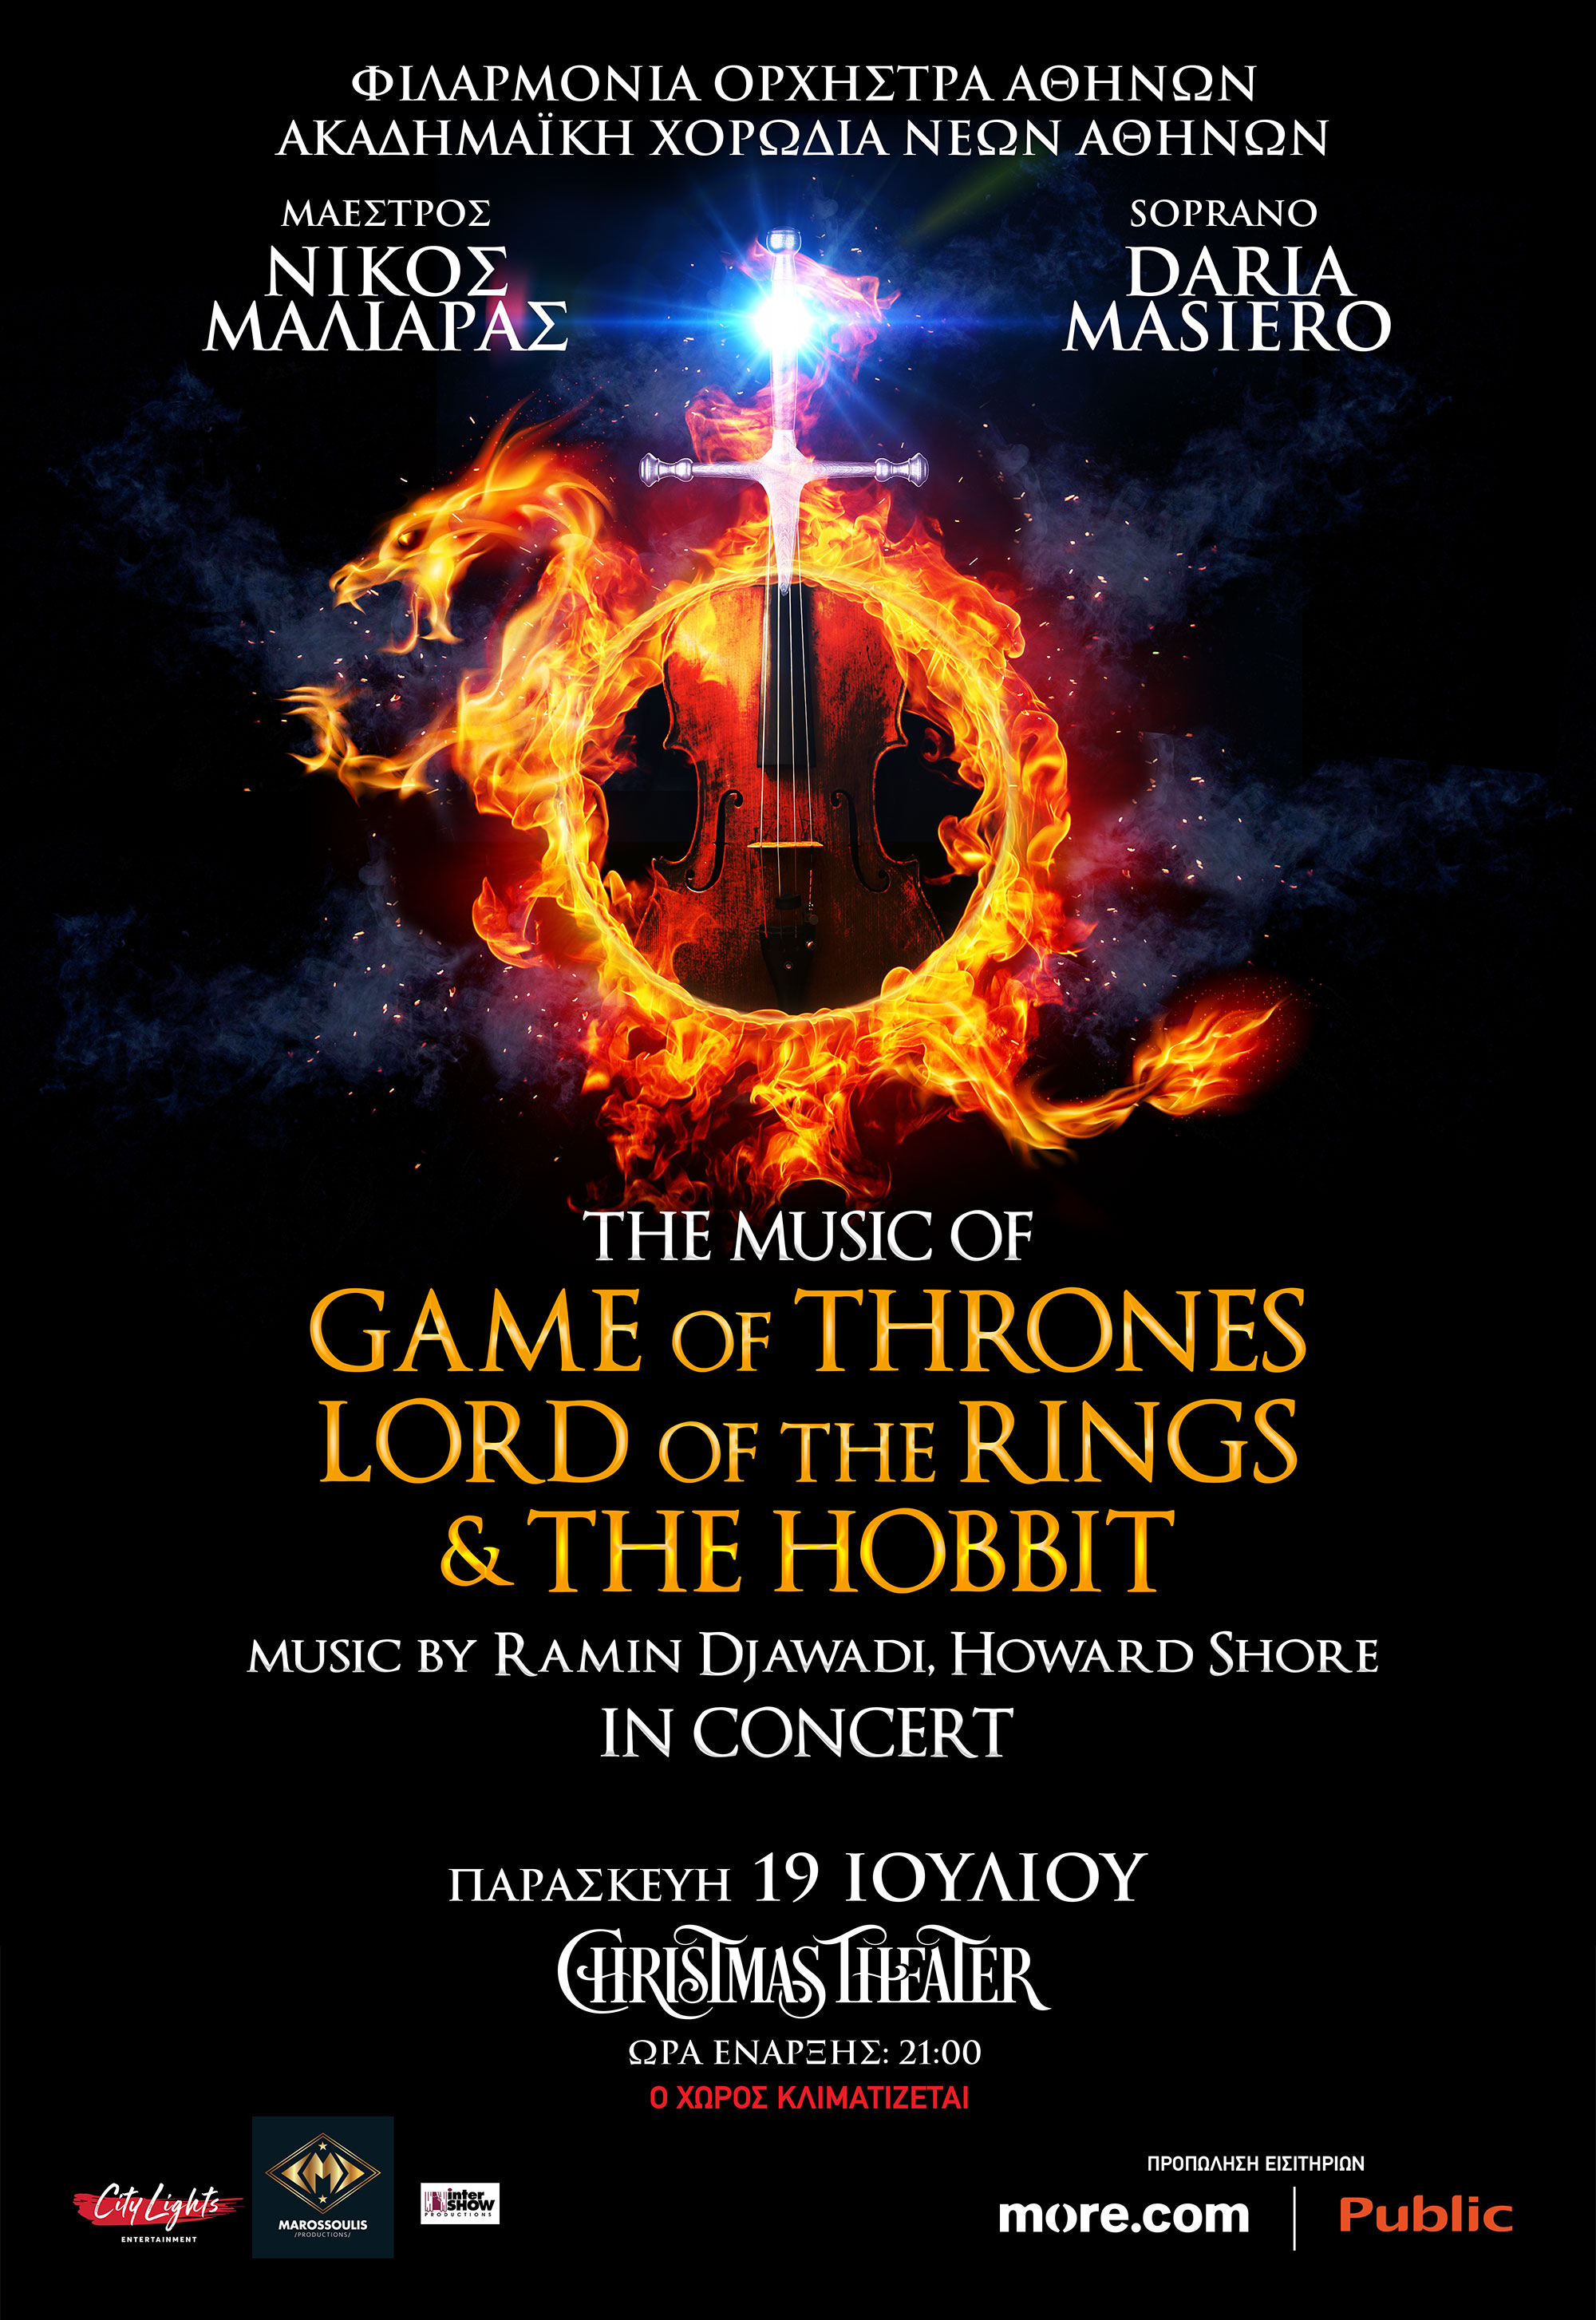 Μια μαγική μουσική εμπειρία: &quot;The music of Game of Thrones - Lord of the Rings - The Hobbit  in concert&quot;. 19/7 στο CHRISTMAS THEATER